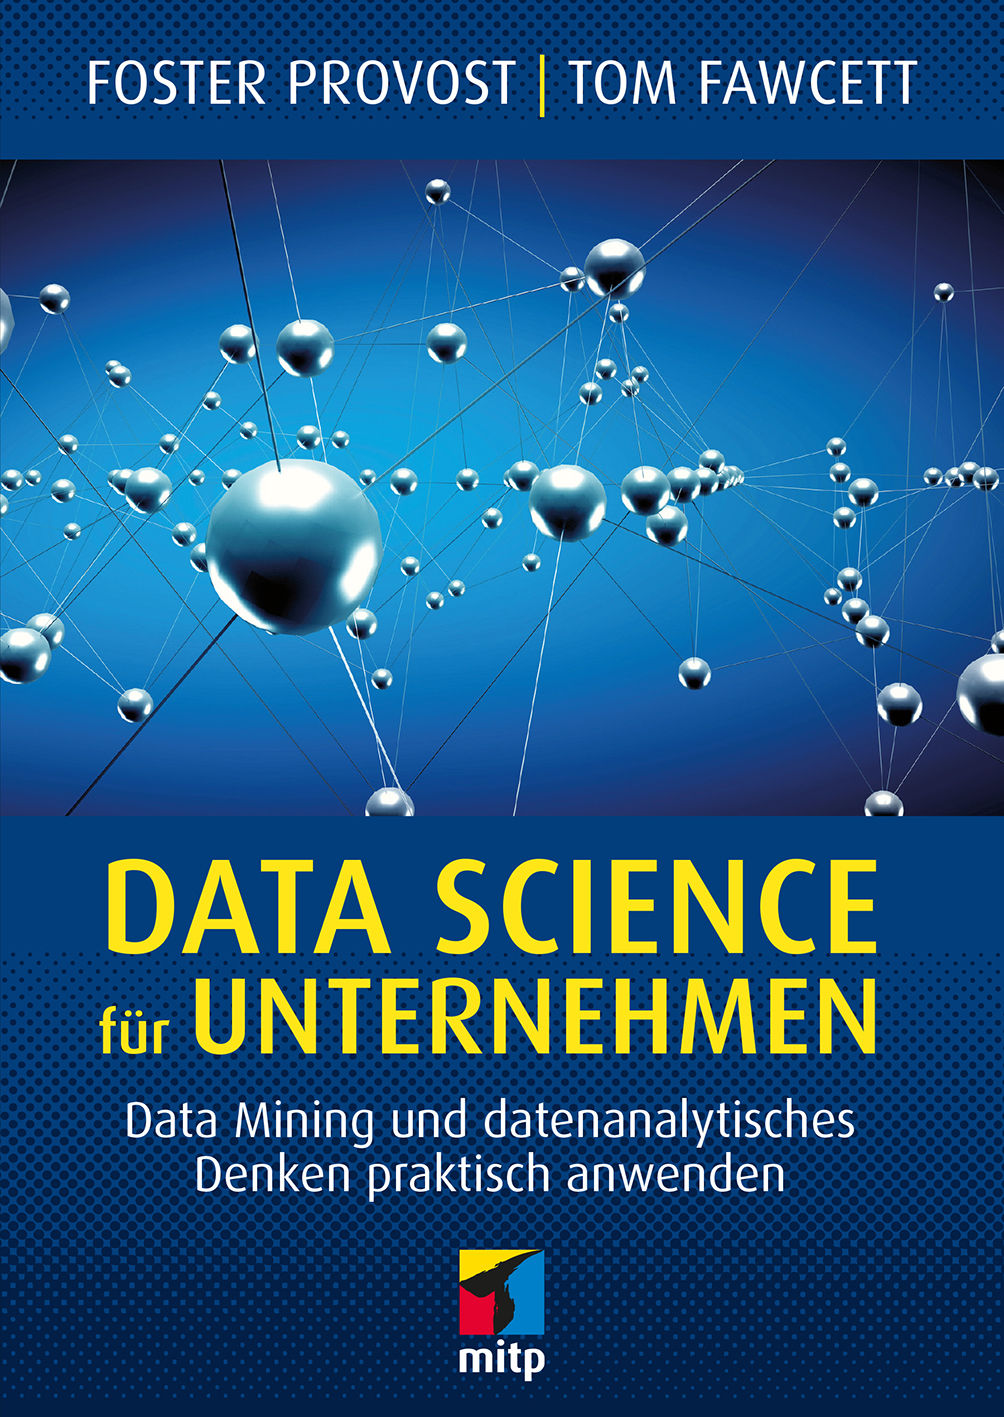 Data Science für Unternehmen by Provost Foster/Fawcett Tom